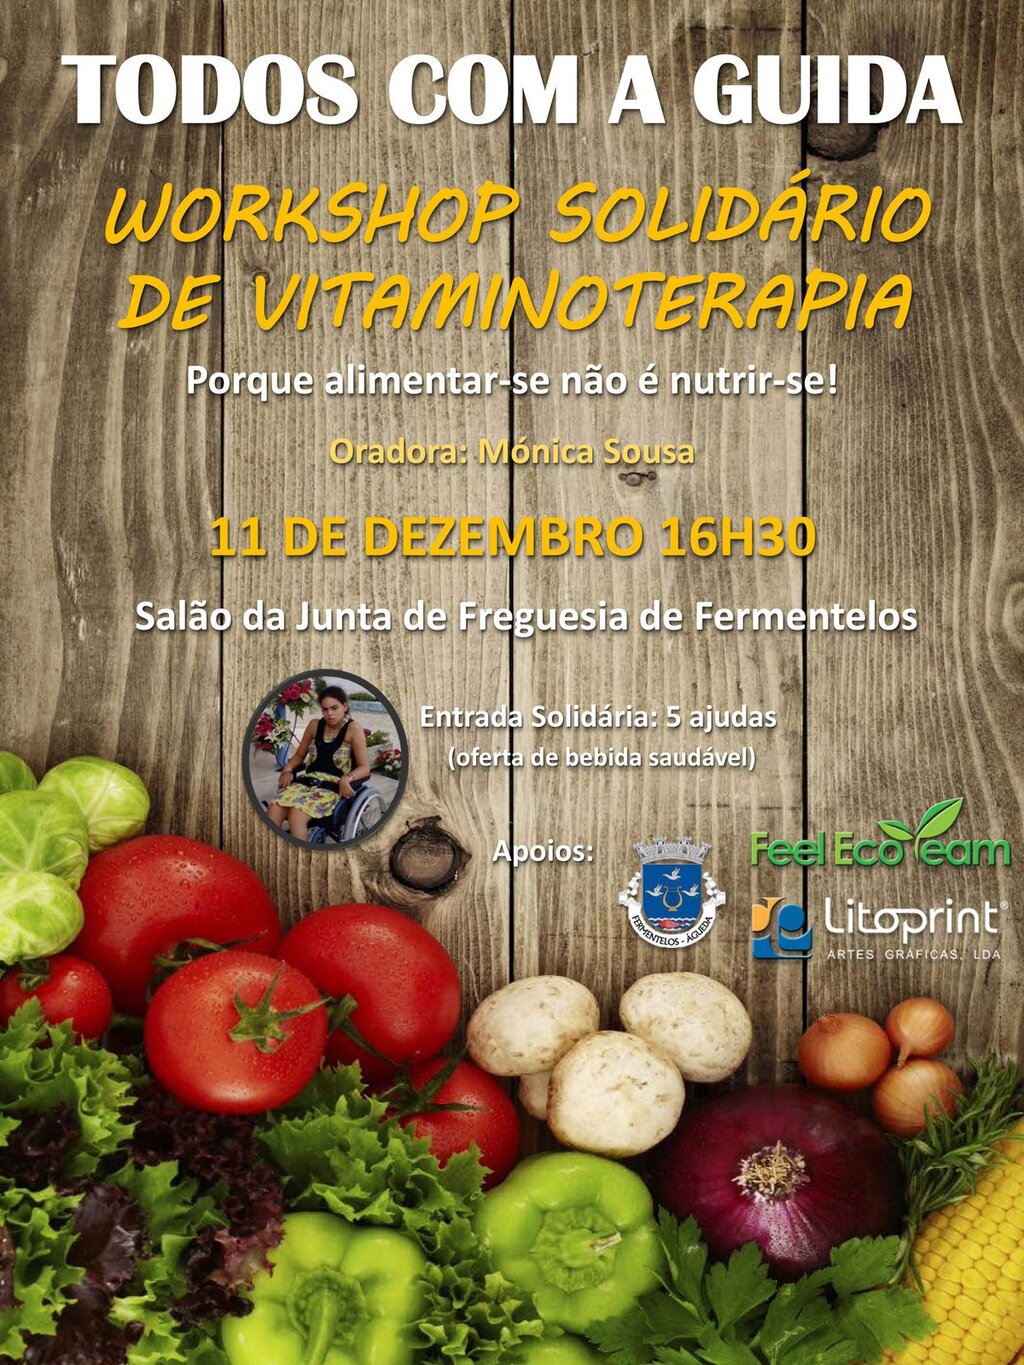 Workshop Solidário de Vitaminoterapia “TODOS COM A GUIDA”